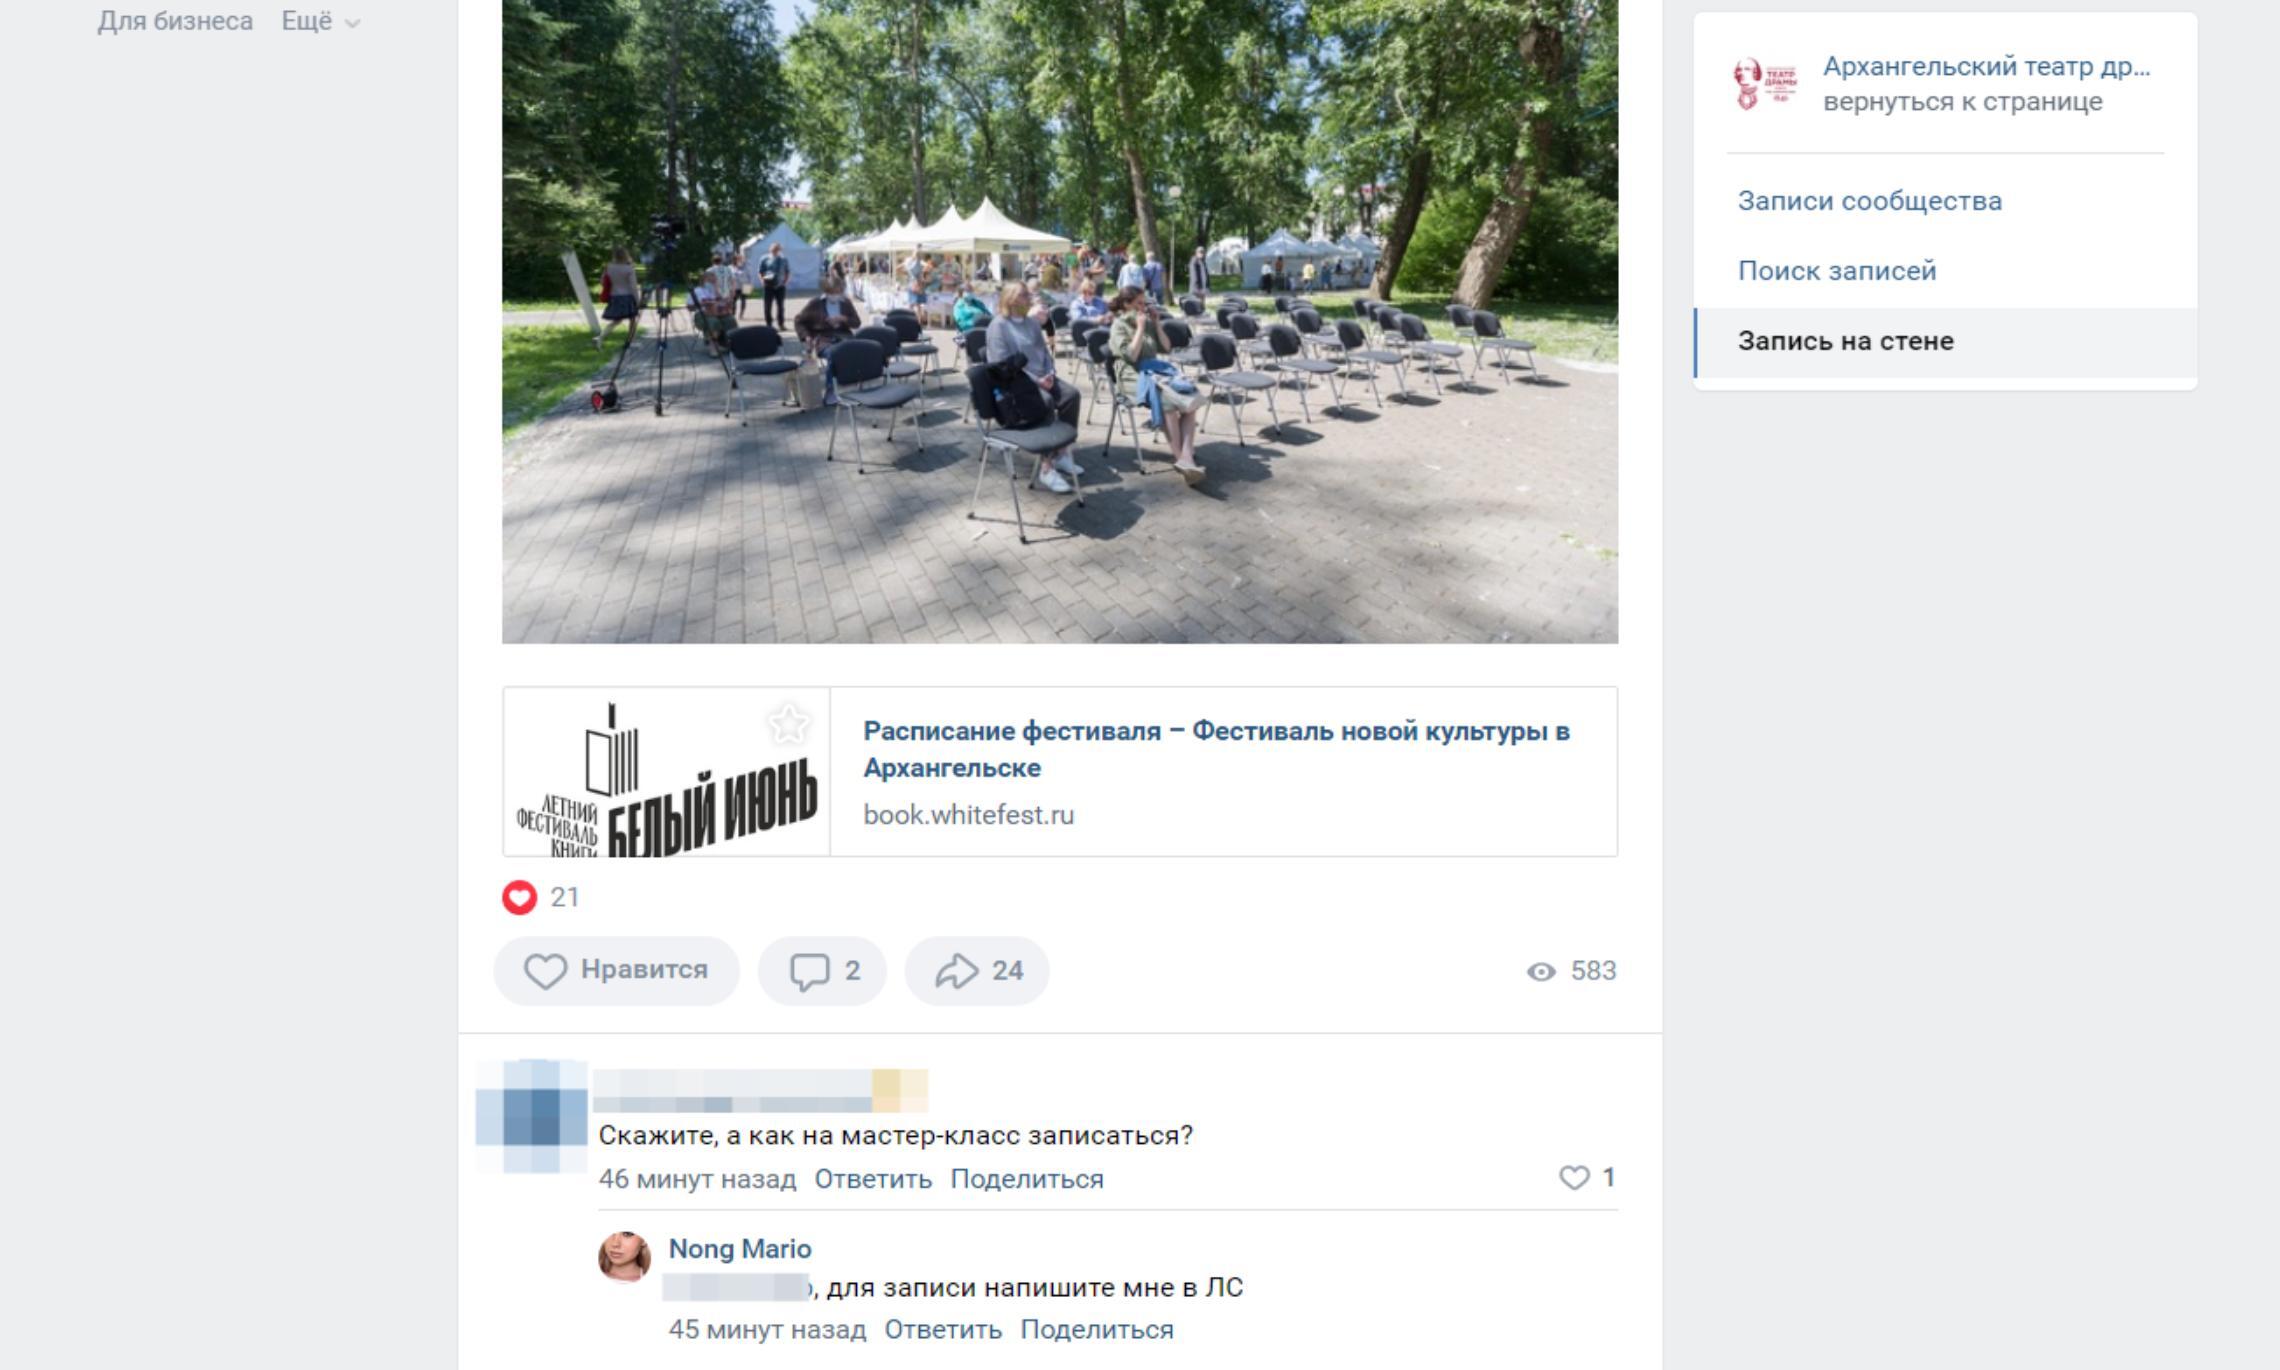 Место для поиска жертв – комментарии под анонсом мероприятий в социальных сетях одной из площадок фестиваля.